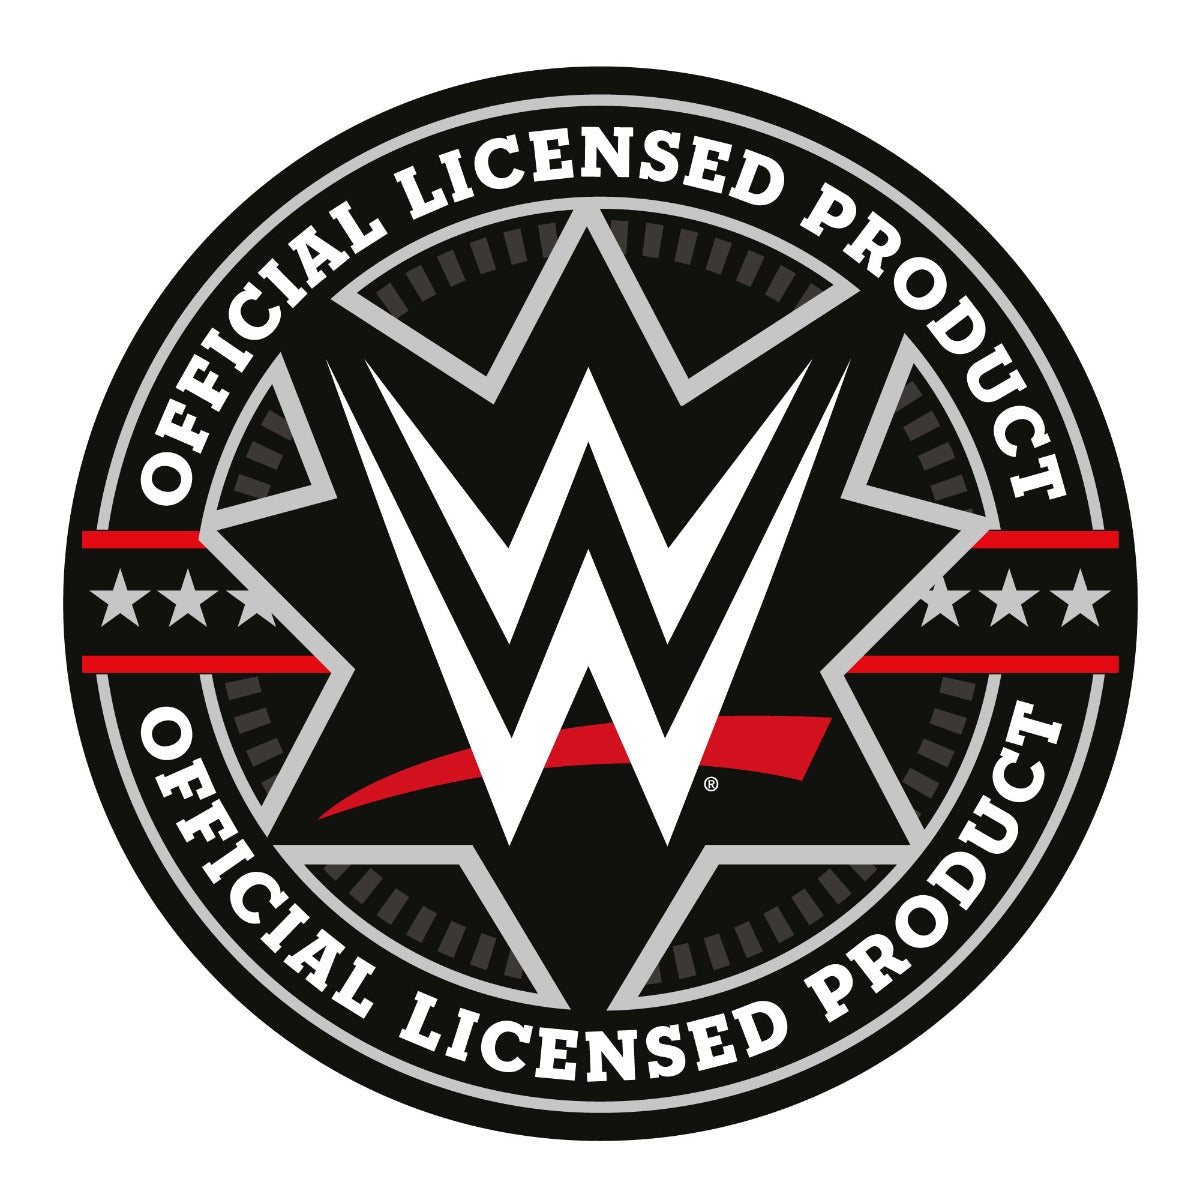 WWE Wall Sticker - Jimmy Uso Broken Wall